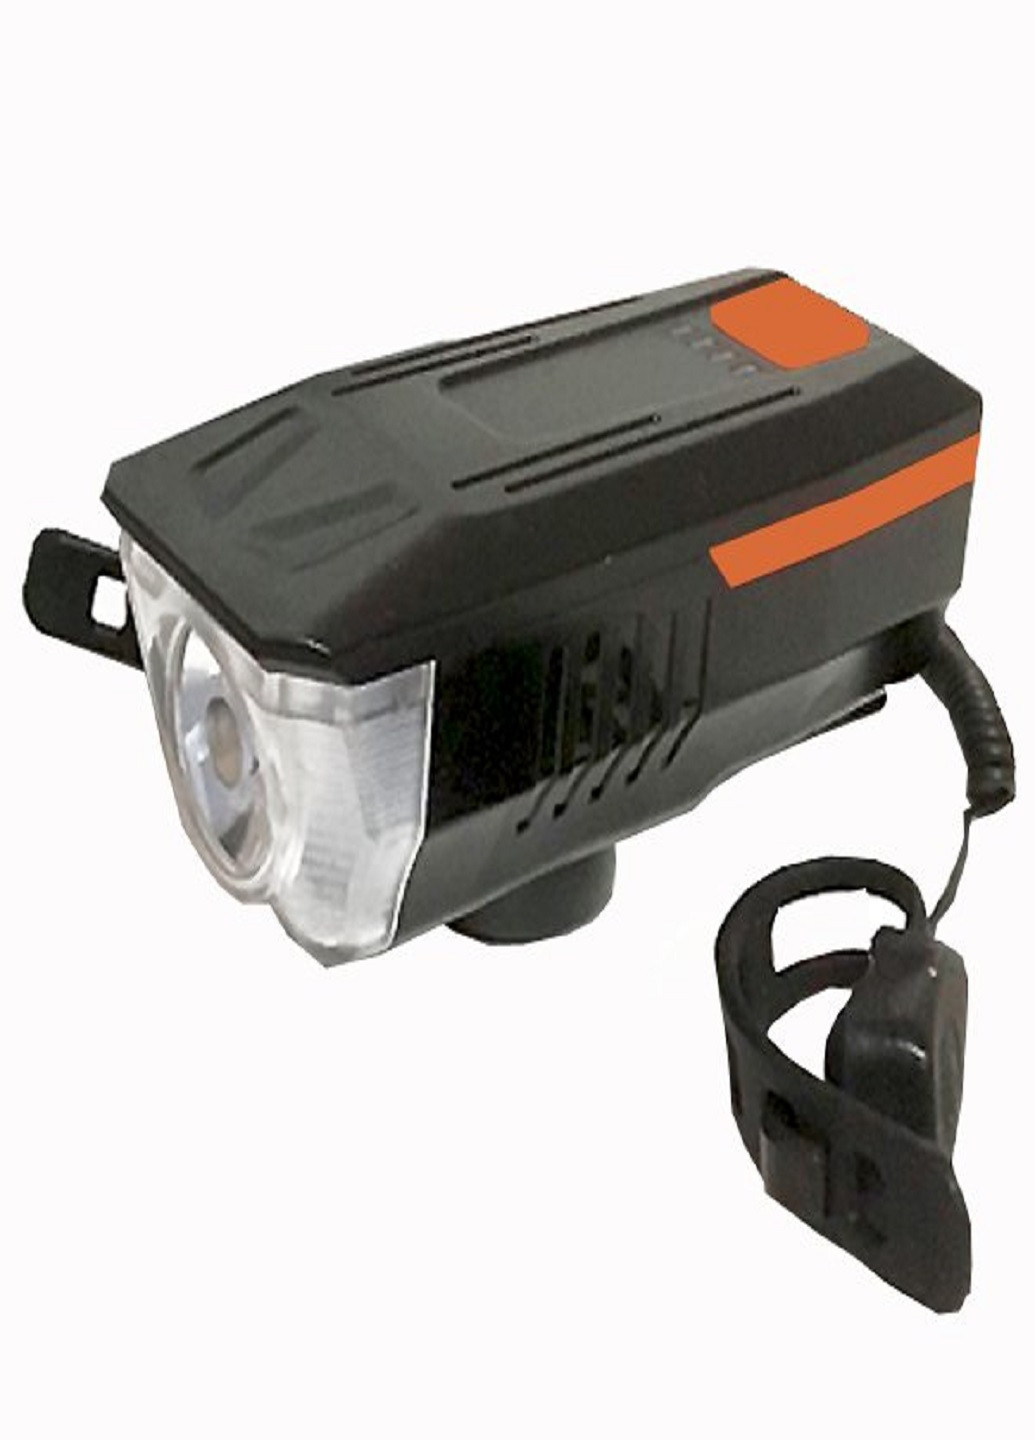 Универсальный аккумуляторный фонарь велосипедный LY-16 влагостойкий со звонком с креплением на руль Оранжевый VTech (253499261)